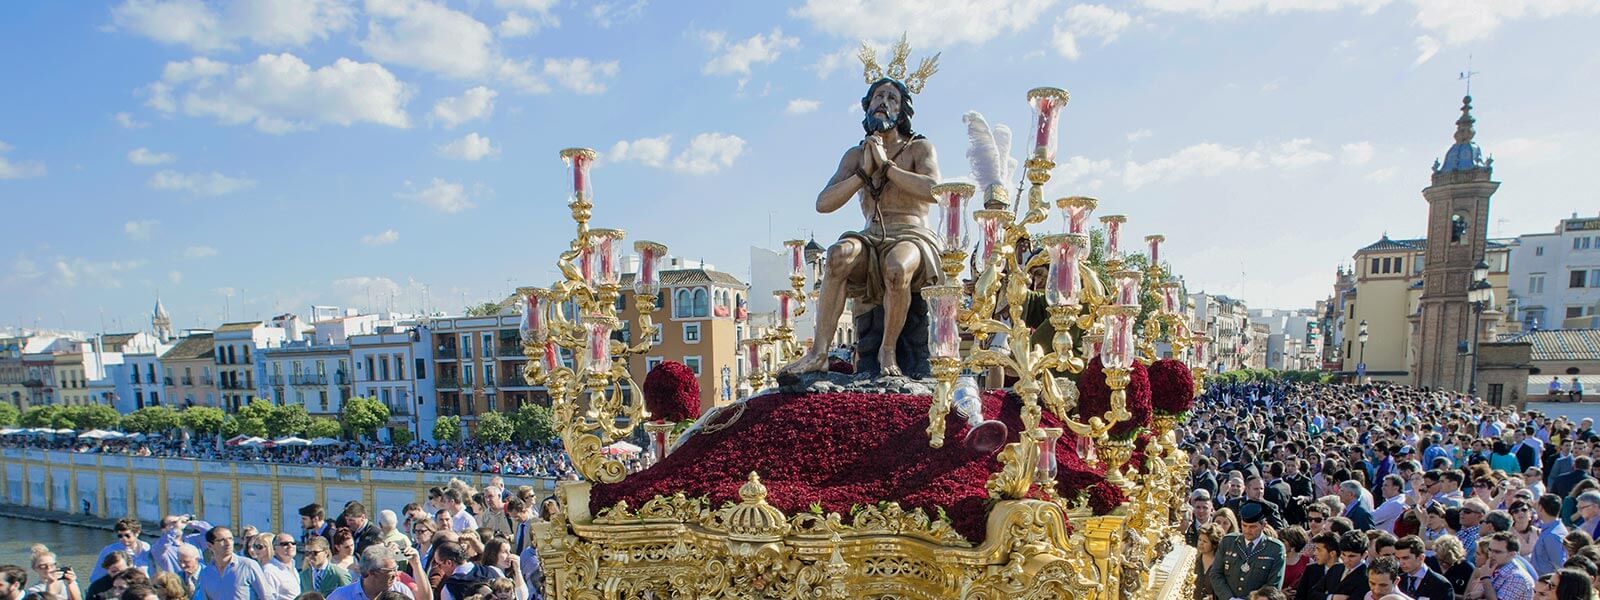 Strange Easter week celebrations in Spain